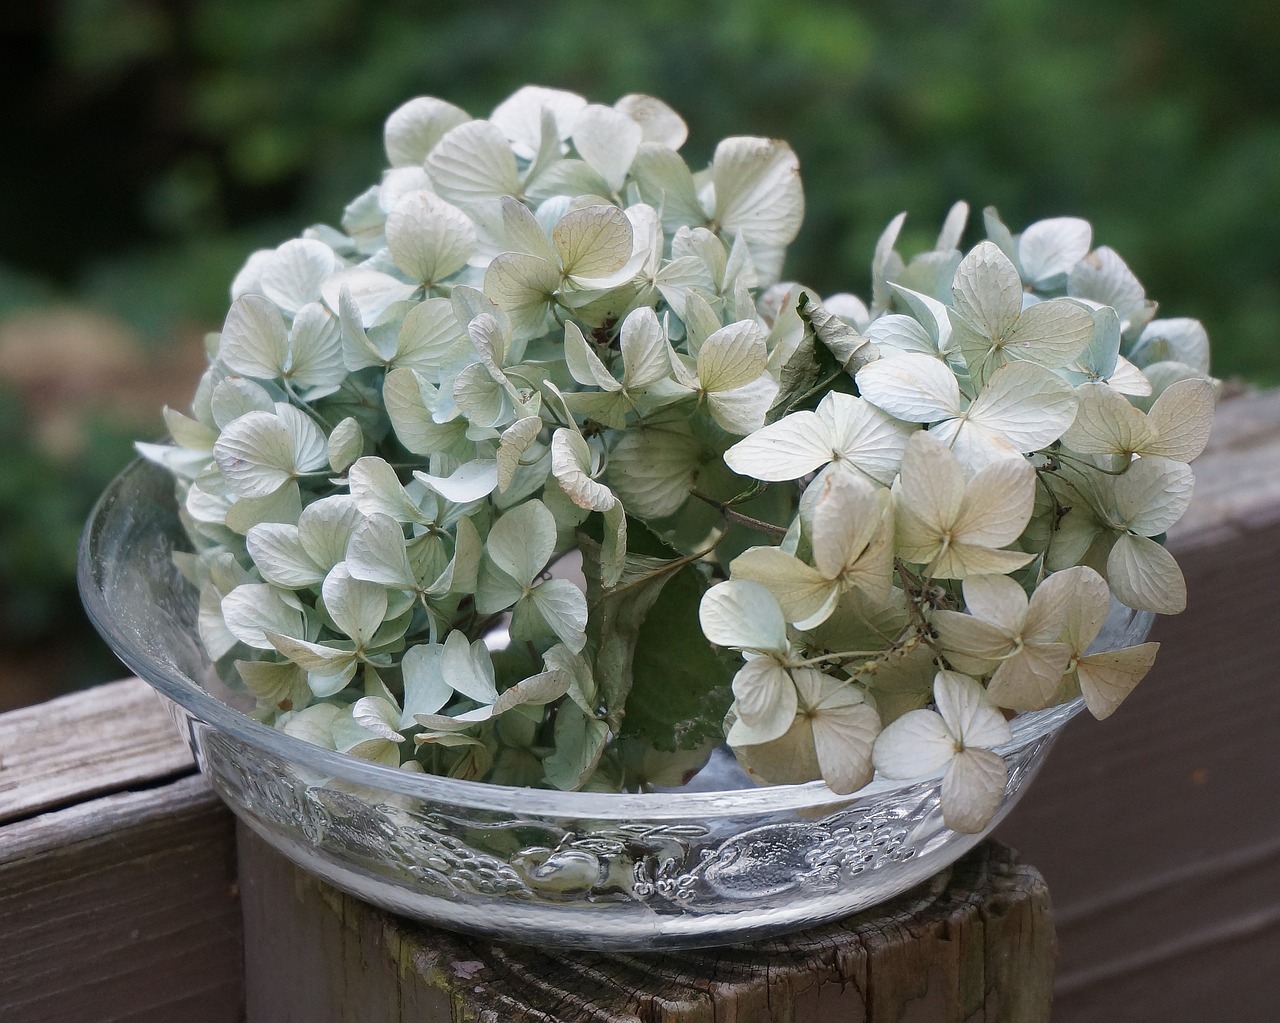 dried hydrangeas in glass bowl dried hydrangea flowers flowers free photo